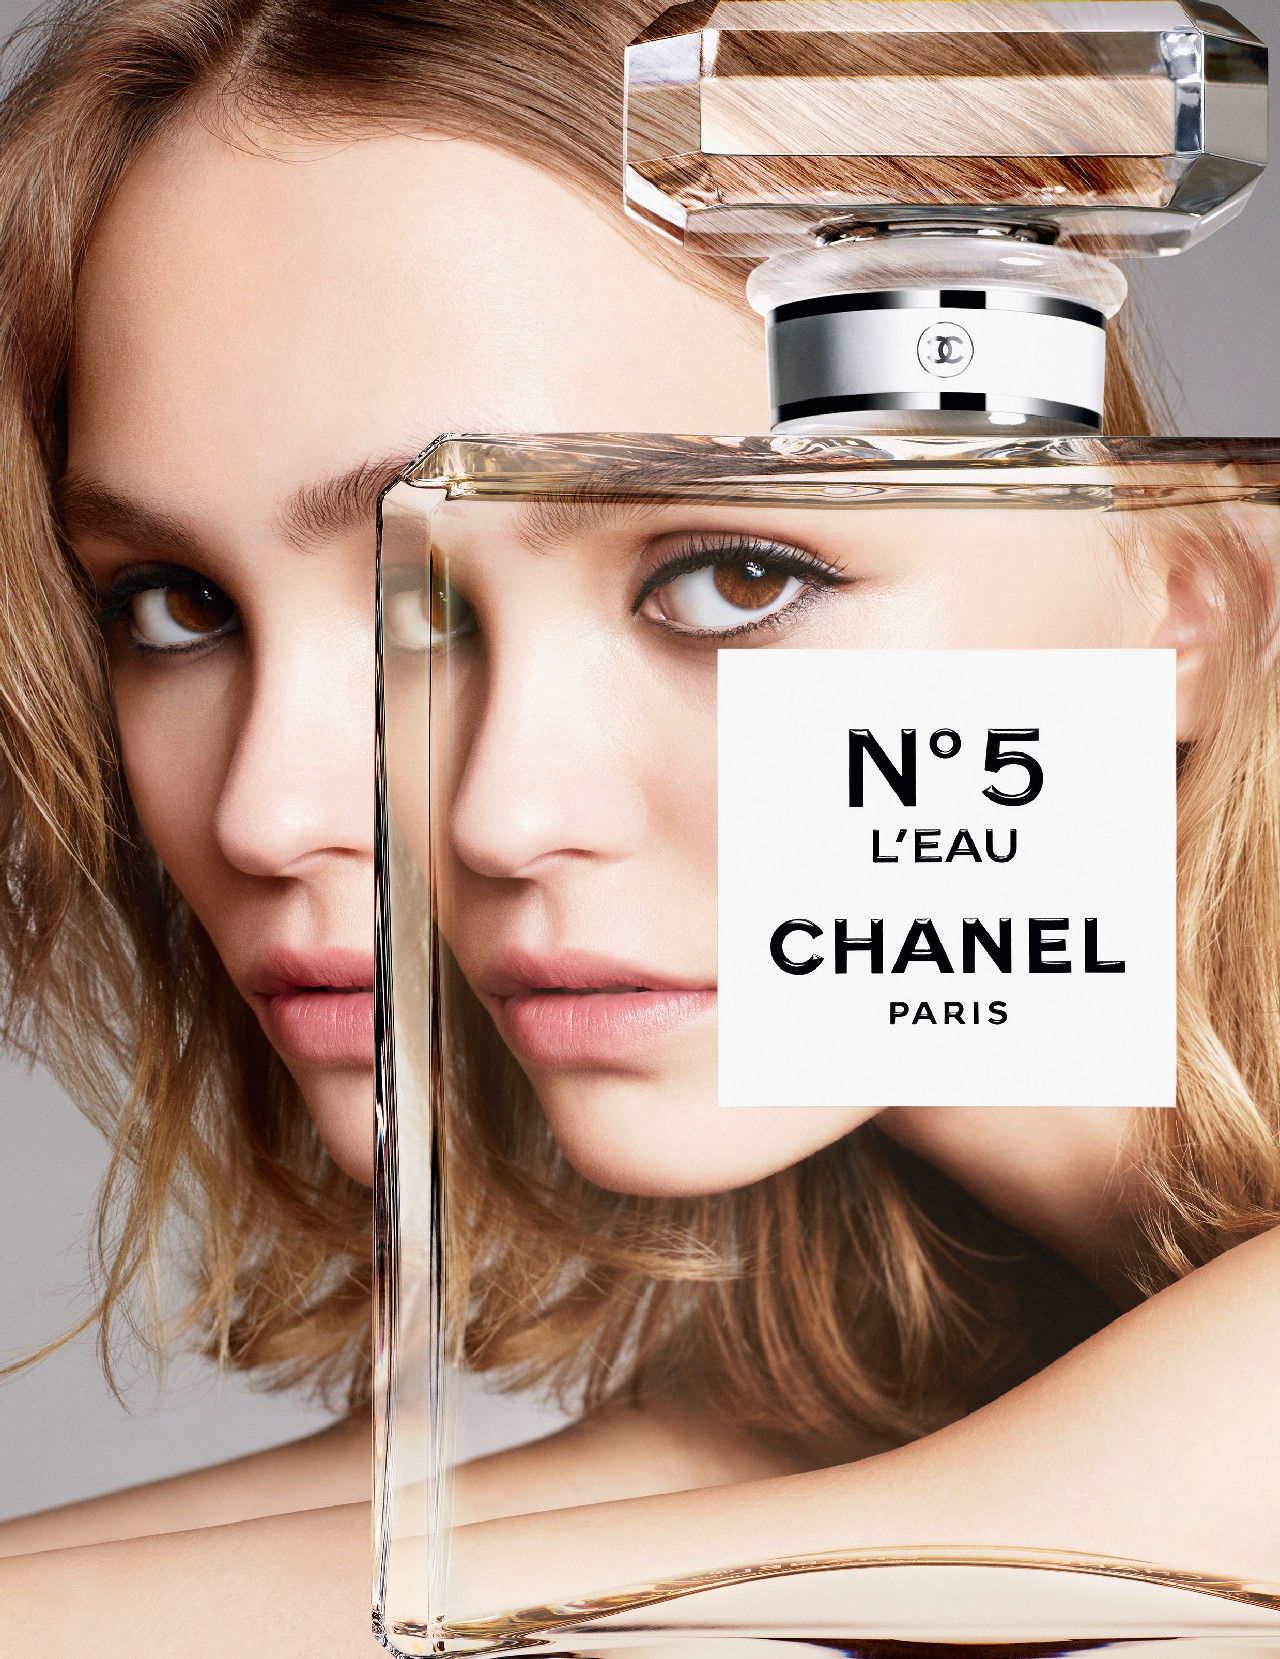 Chanel N° 5 L’EAU Lily-Rose Depp film: svelato il nuovo video, frammenti ed istantanee, il gioco dei paradossi